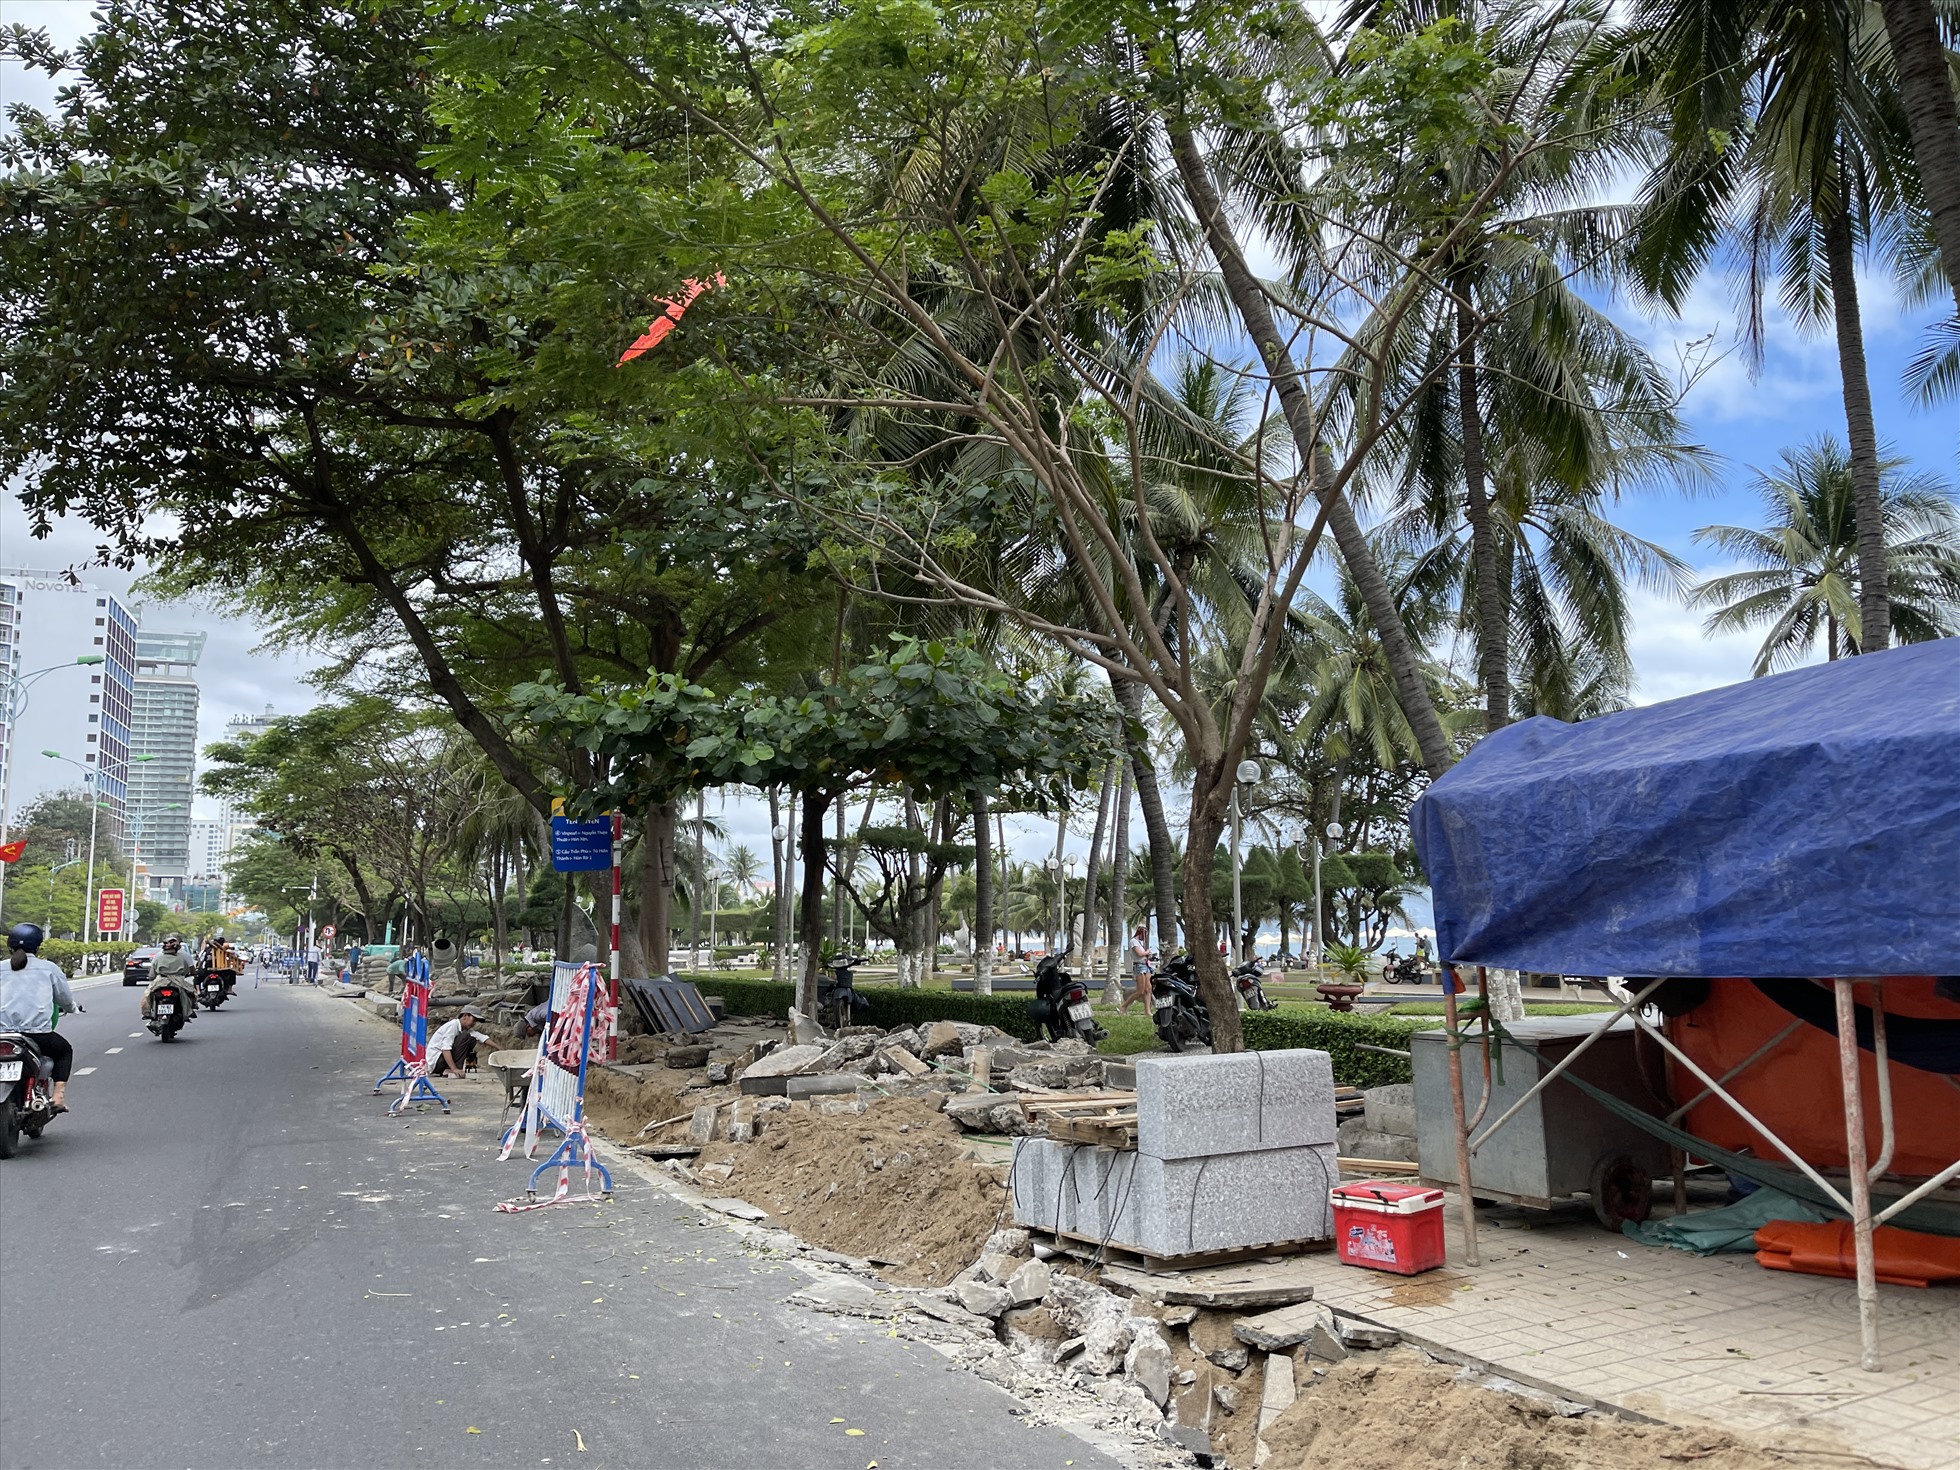 Hàng rào đươc đặt tạm bợ trong quá trình thi công cải tạo vỉa hè đường bờ biển Trần Phú. Ảnh: Thu Cúc